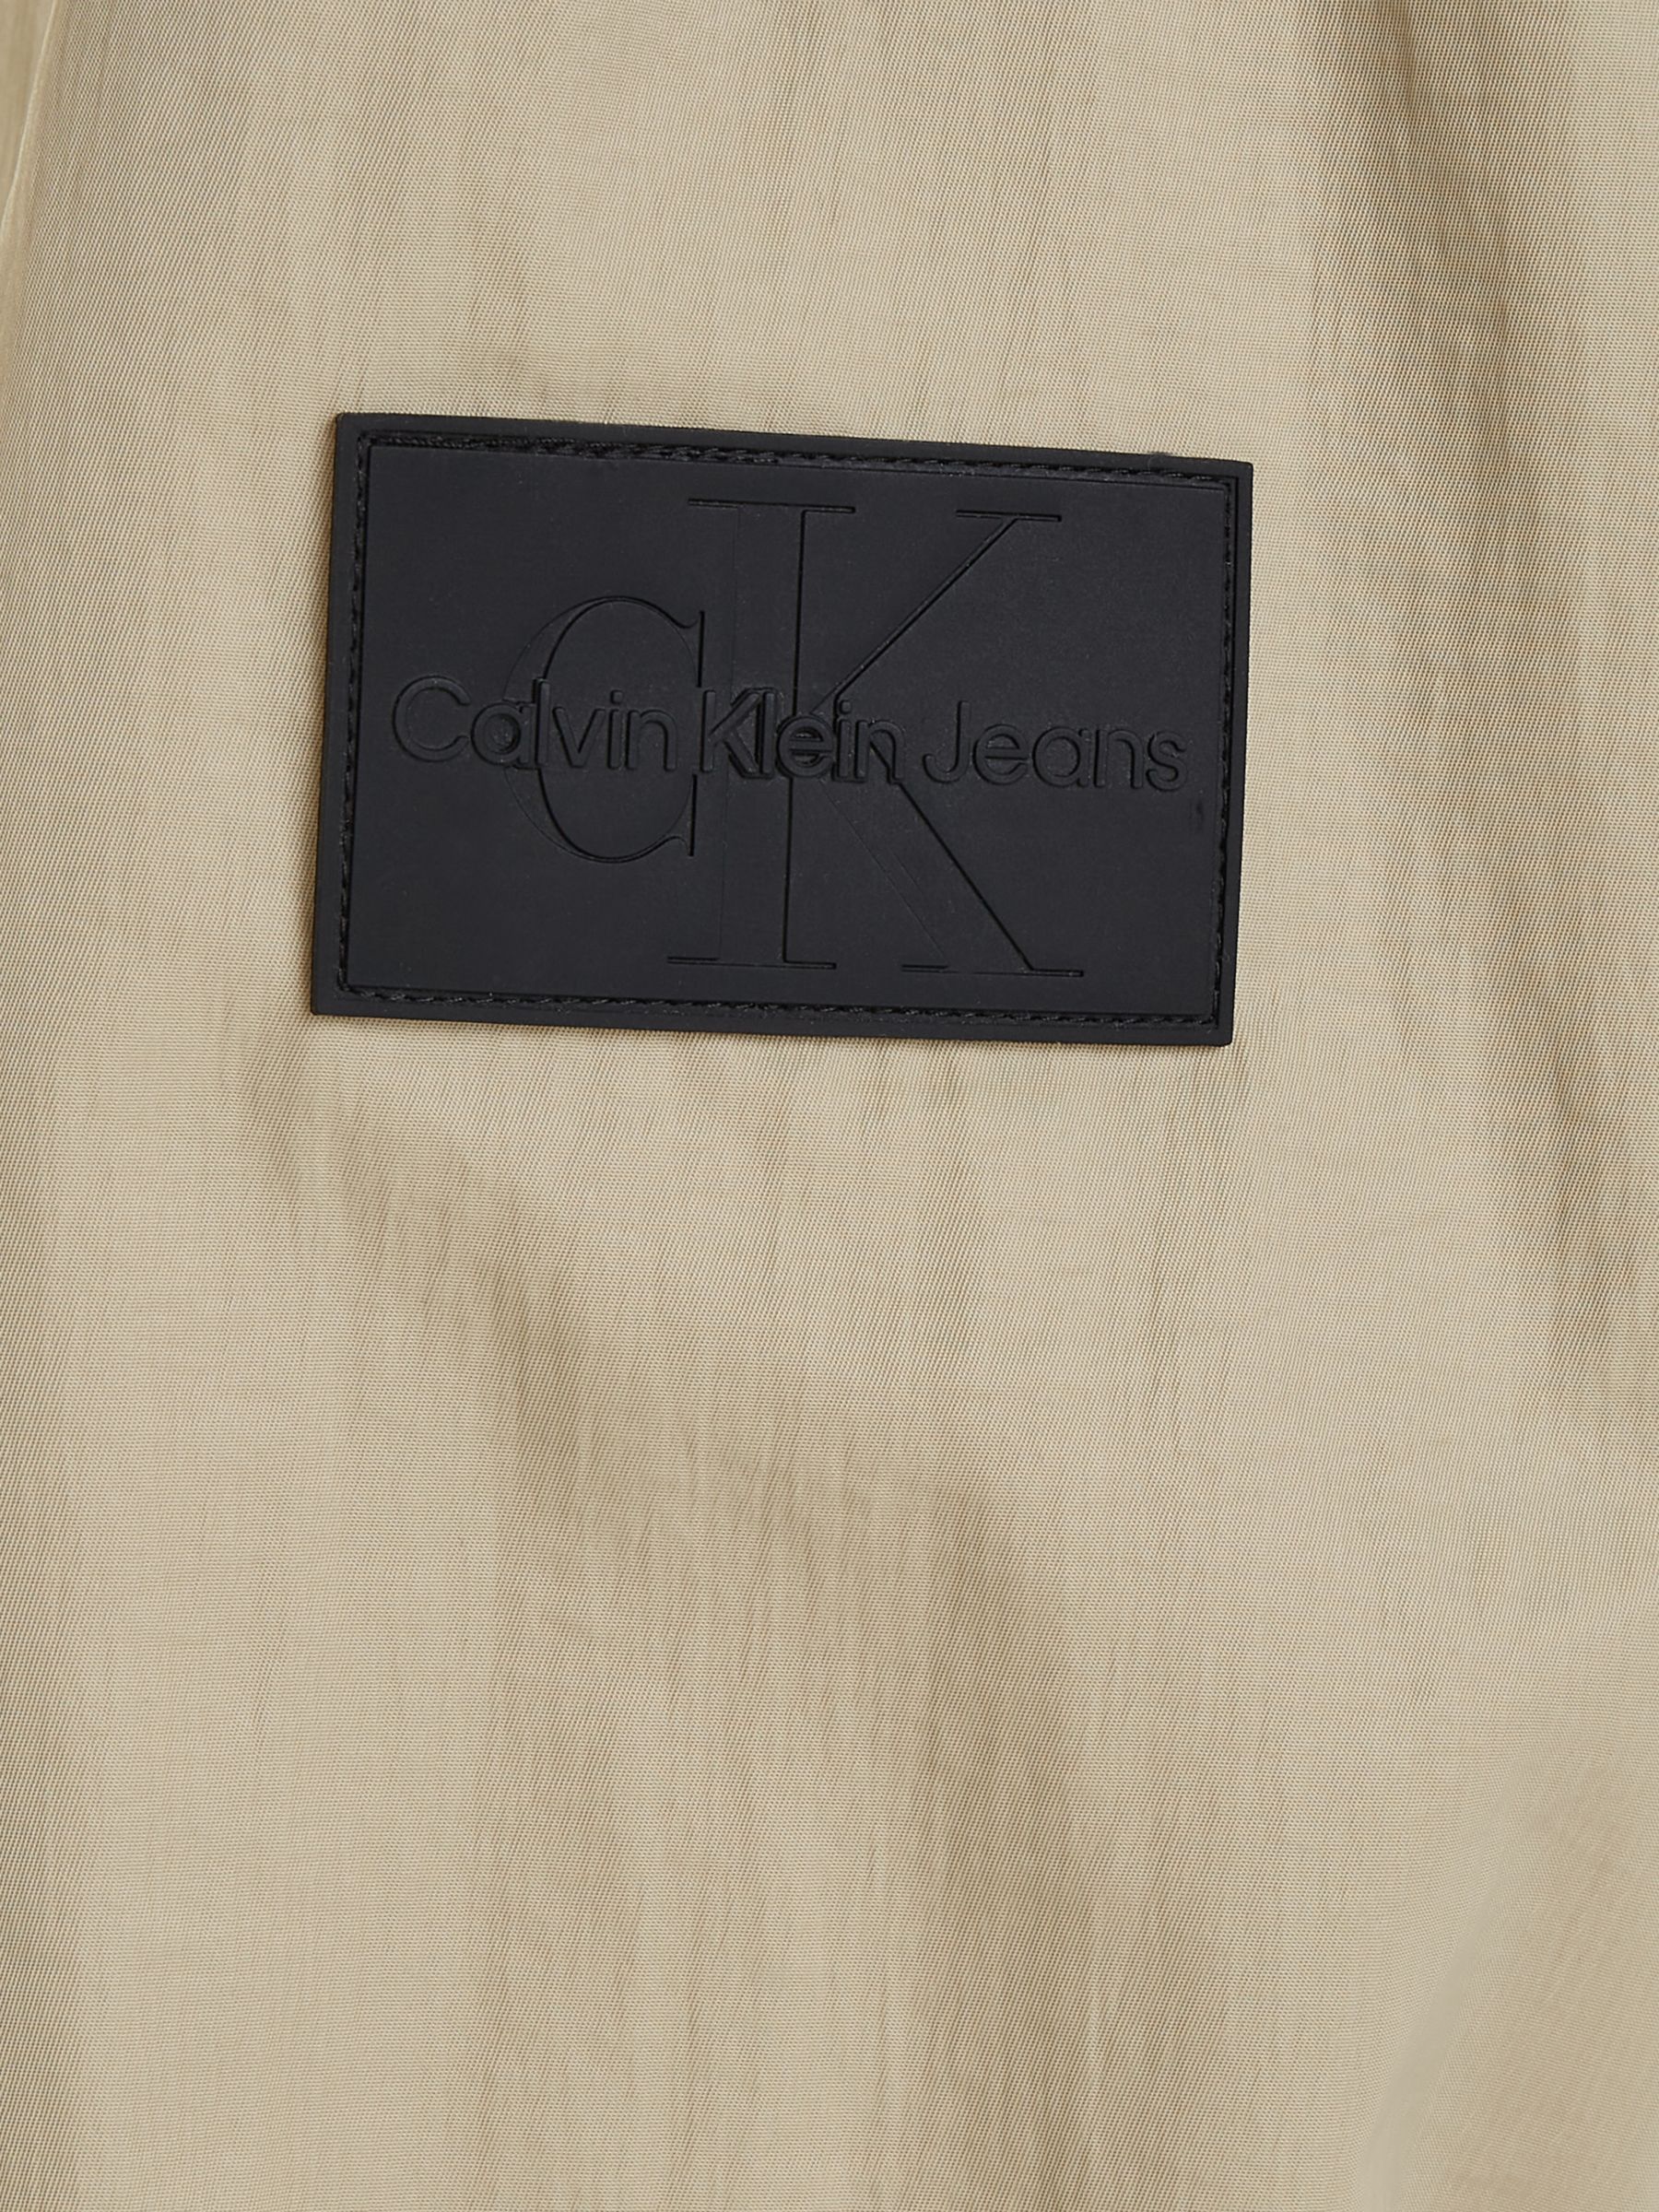 Calvin Klein Jeans Seasonal Windbreaker Jacket, Taupe, L